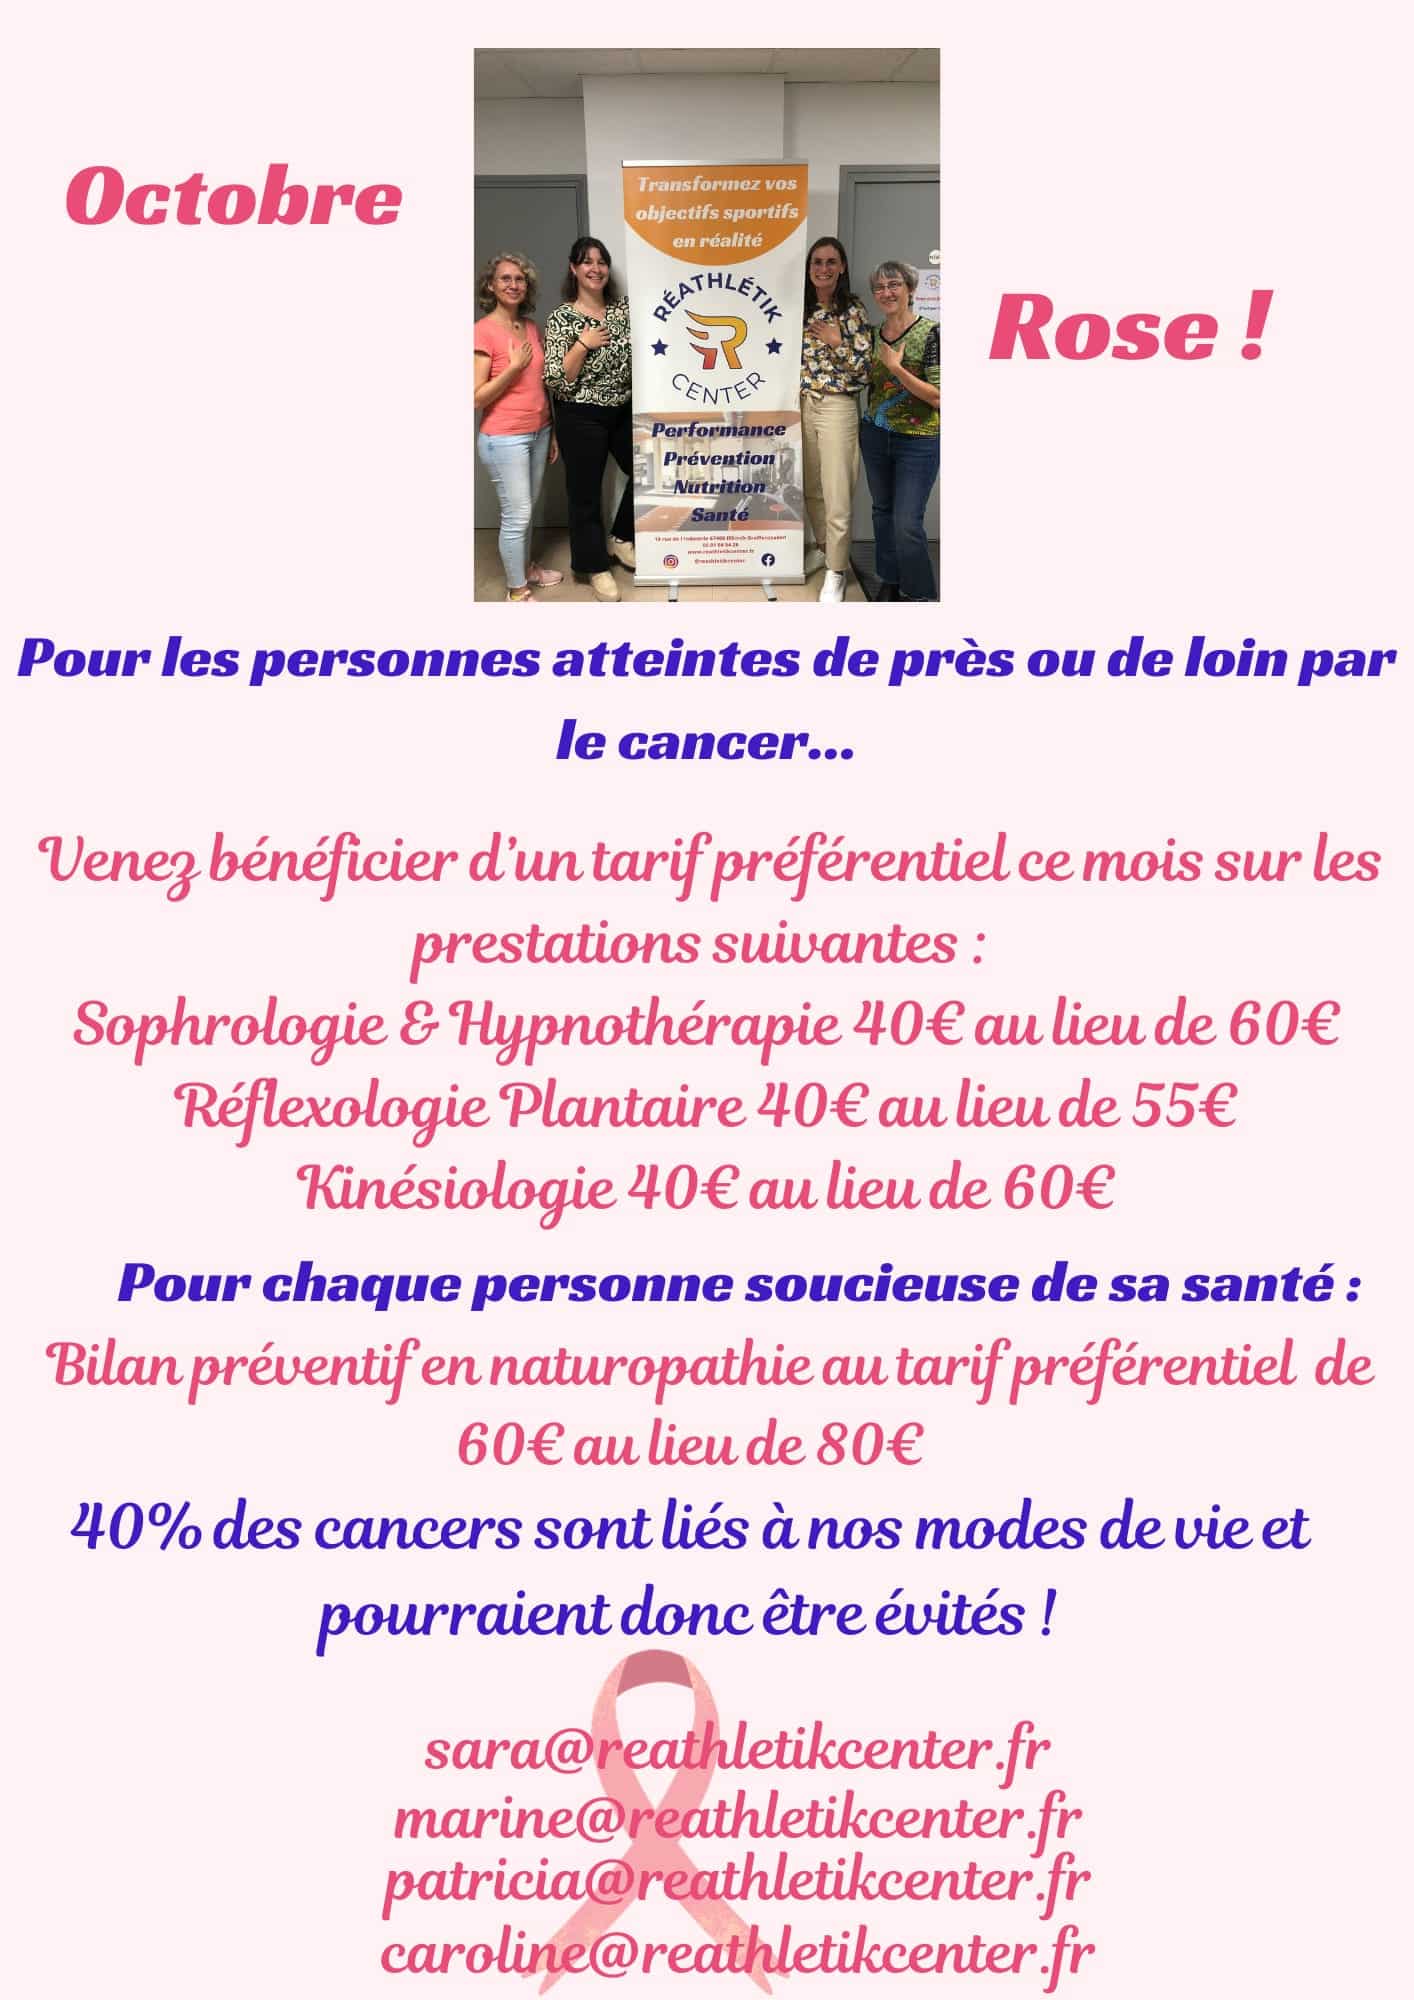 Affiche octobre rose pour proposere des tarifs préférentiels aux personnes atteintes d'un cancer